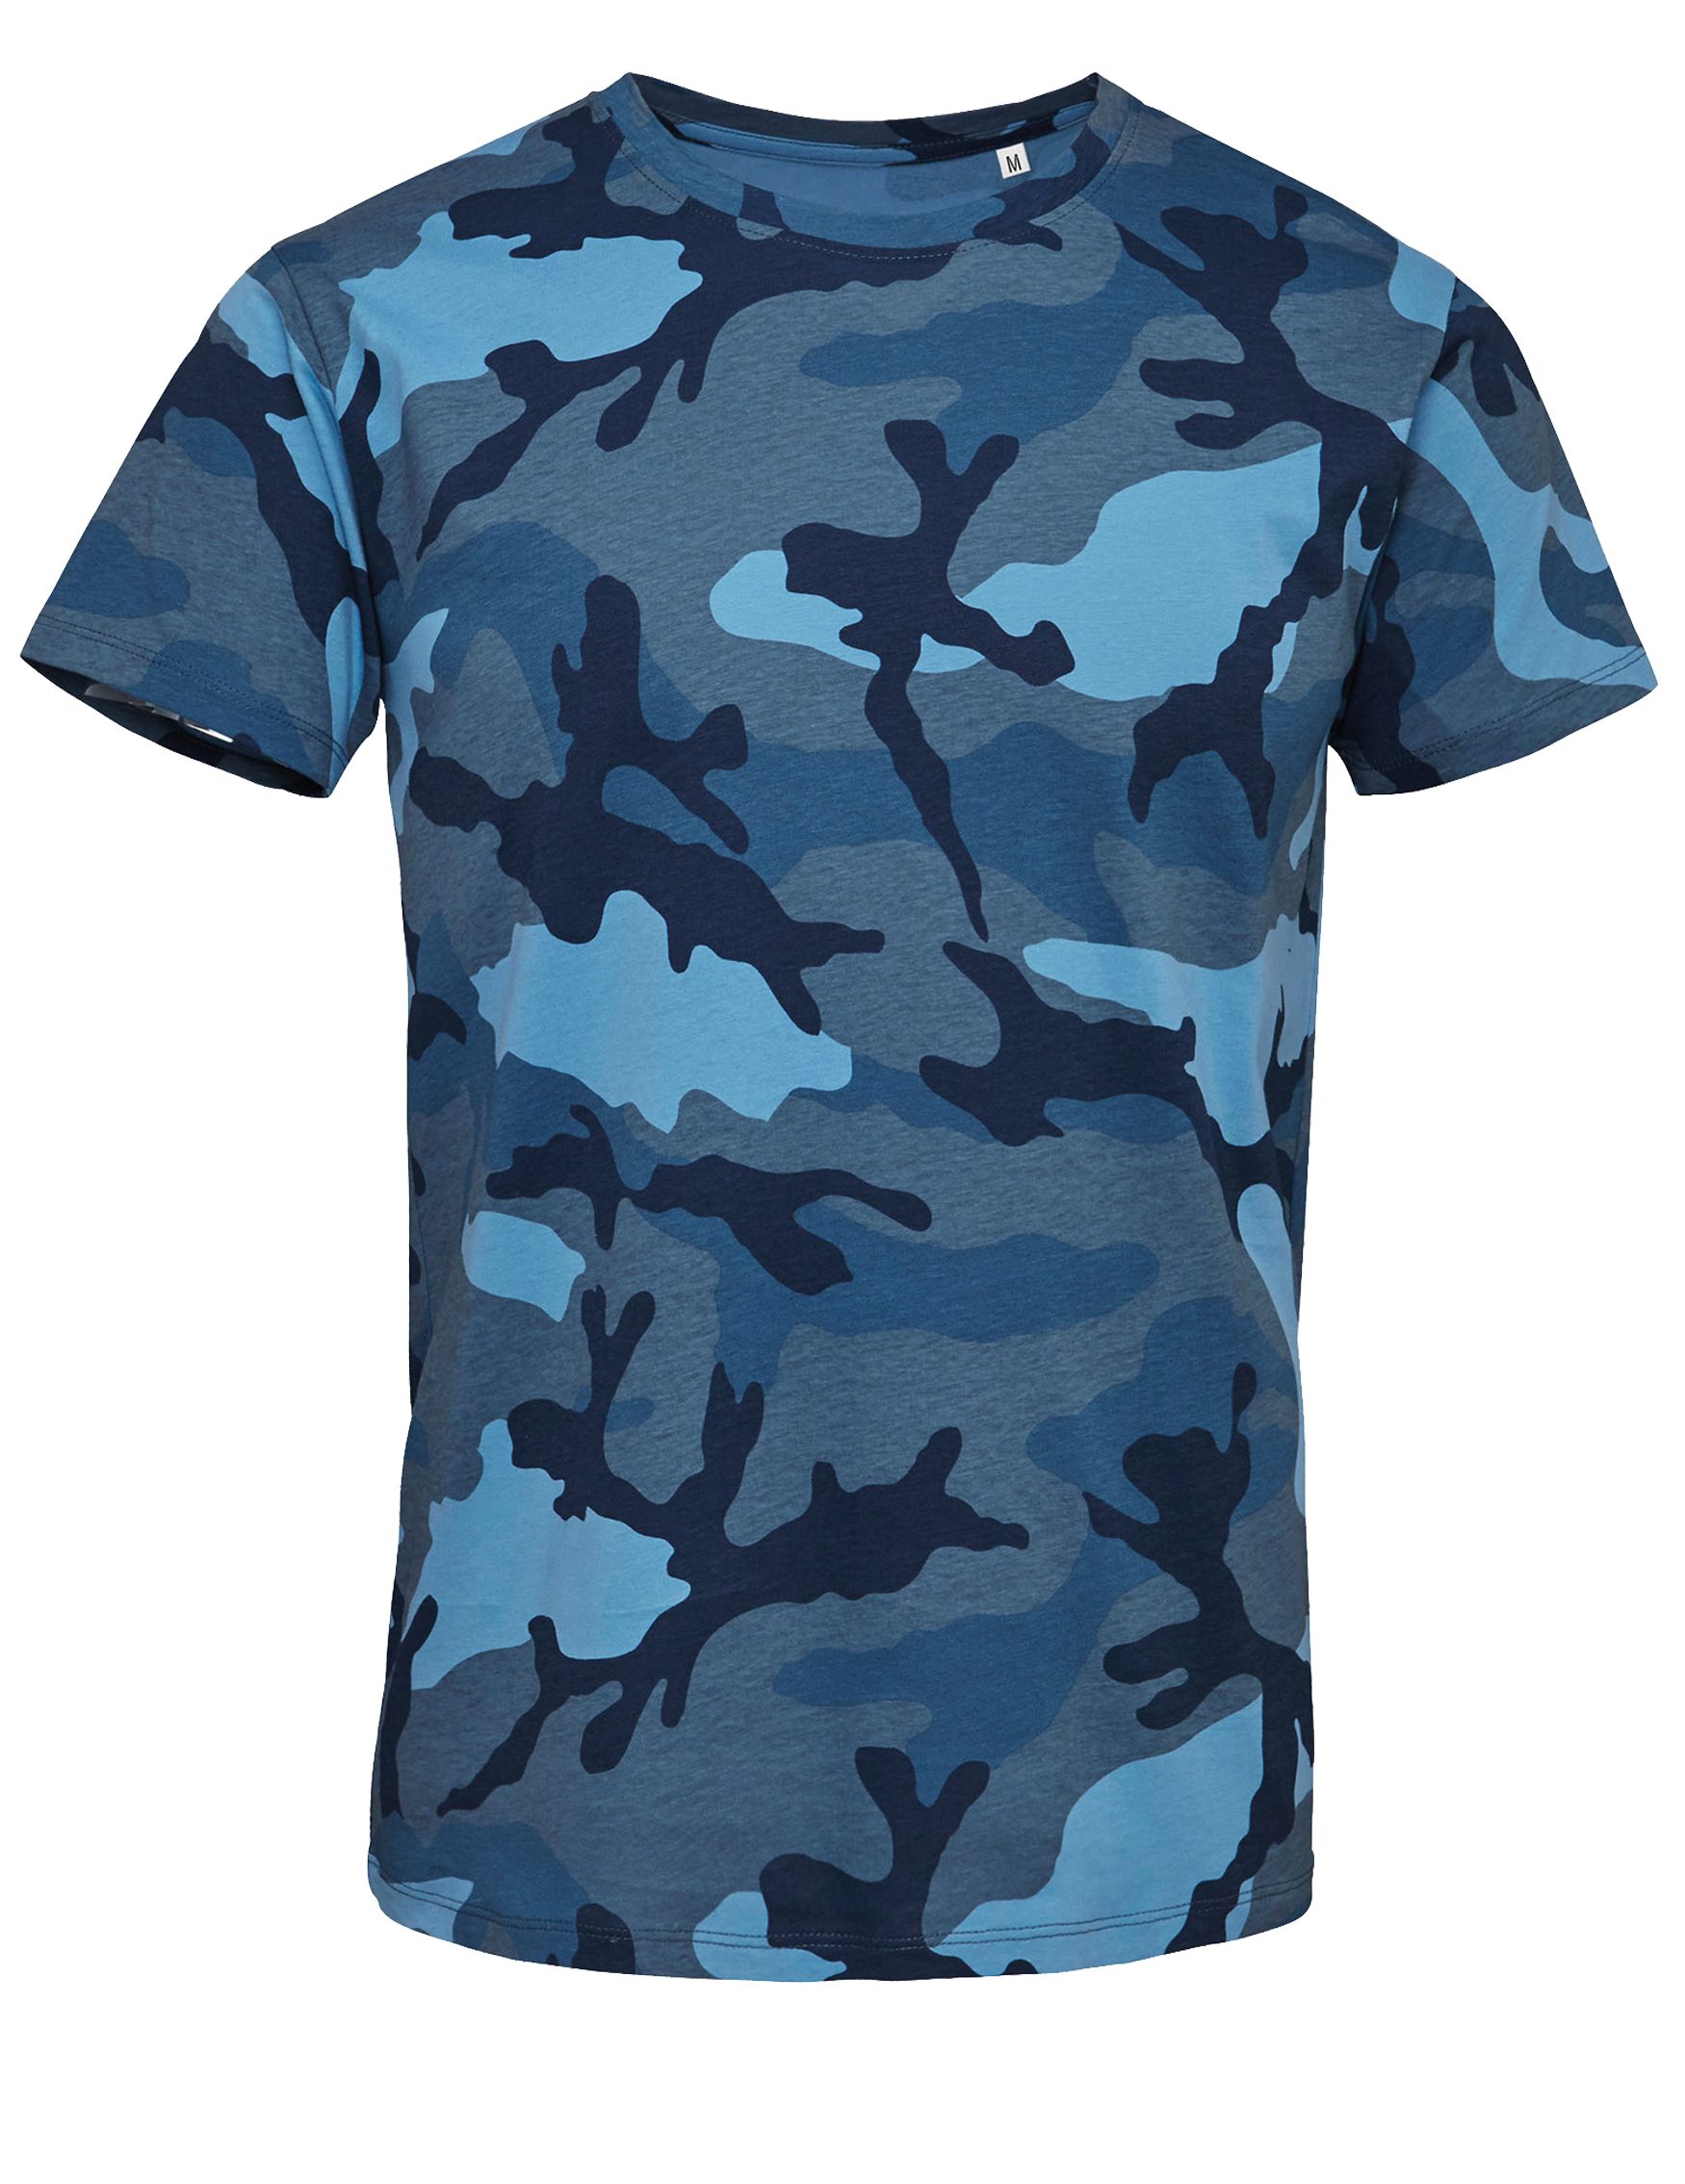 und Look Detail & Blue Camo Camo Grau Blau Tarn lieferbar, Military, Camouflage Farben in Army Shirt Art T-Shirt Grün